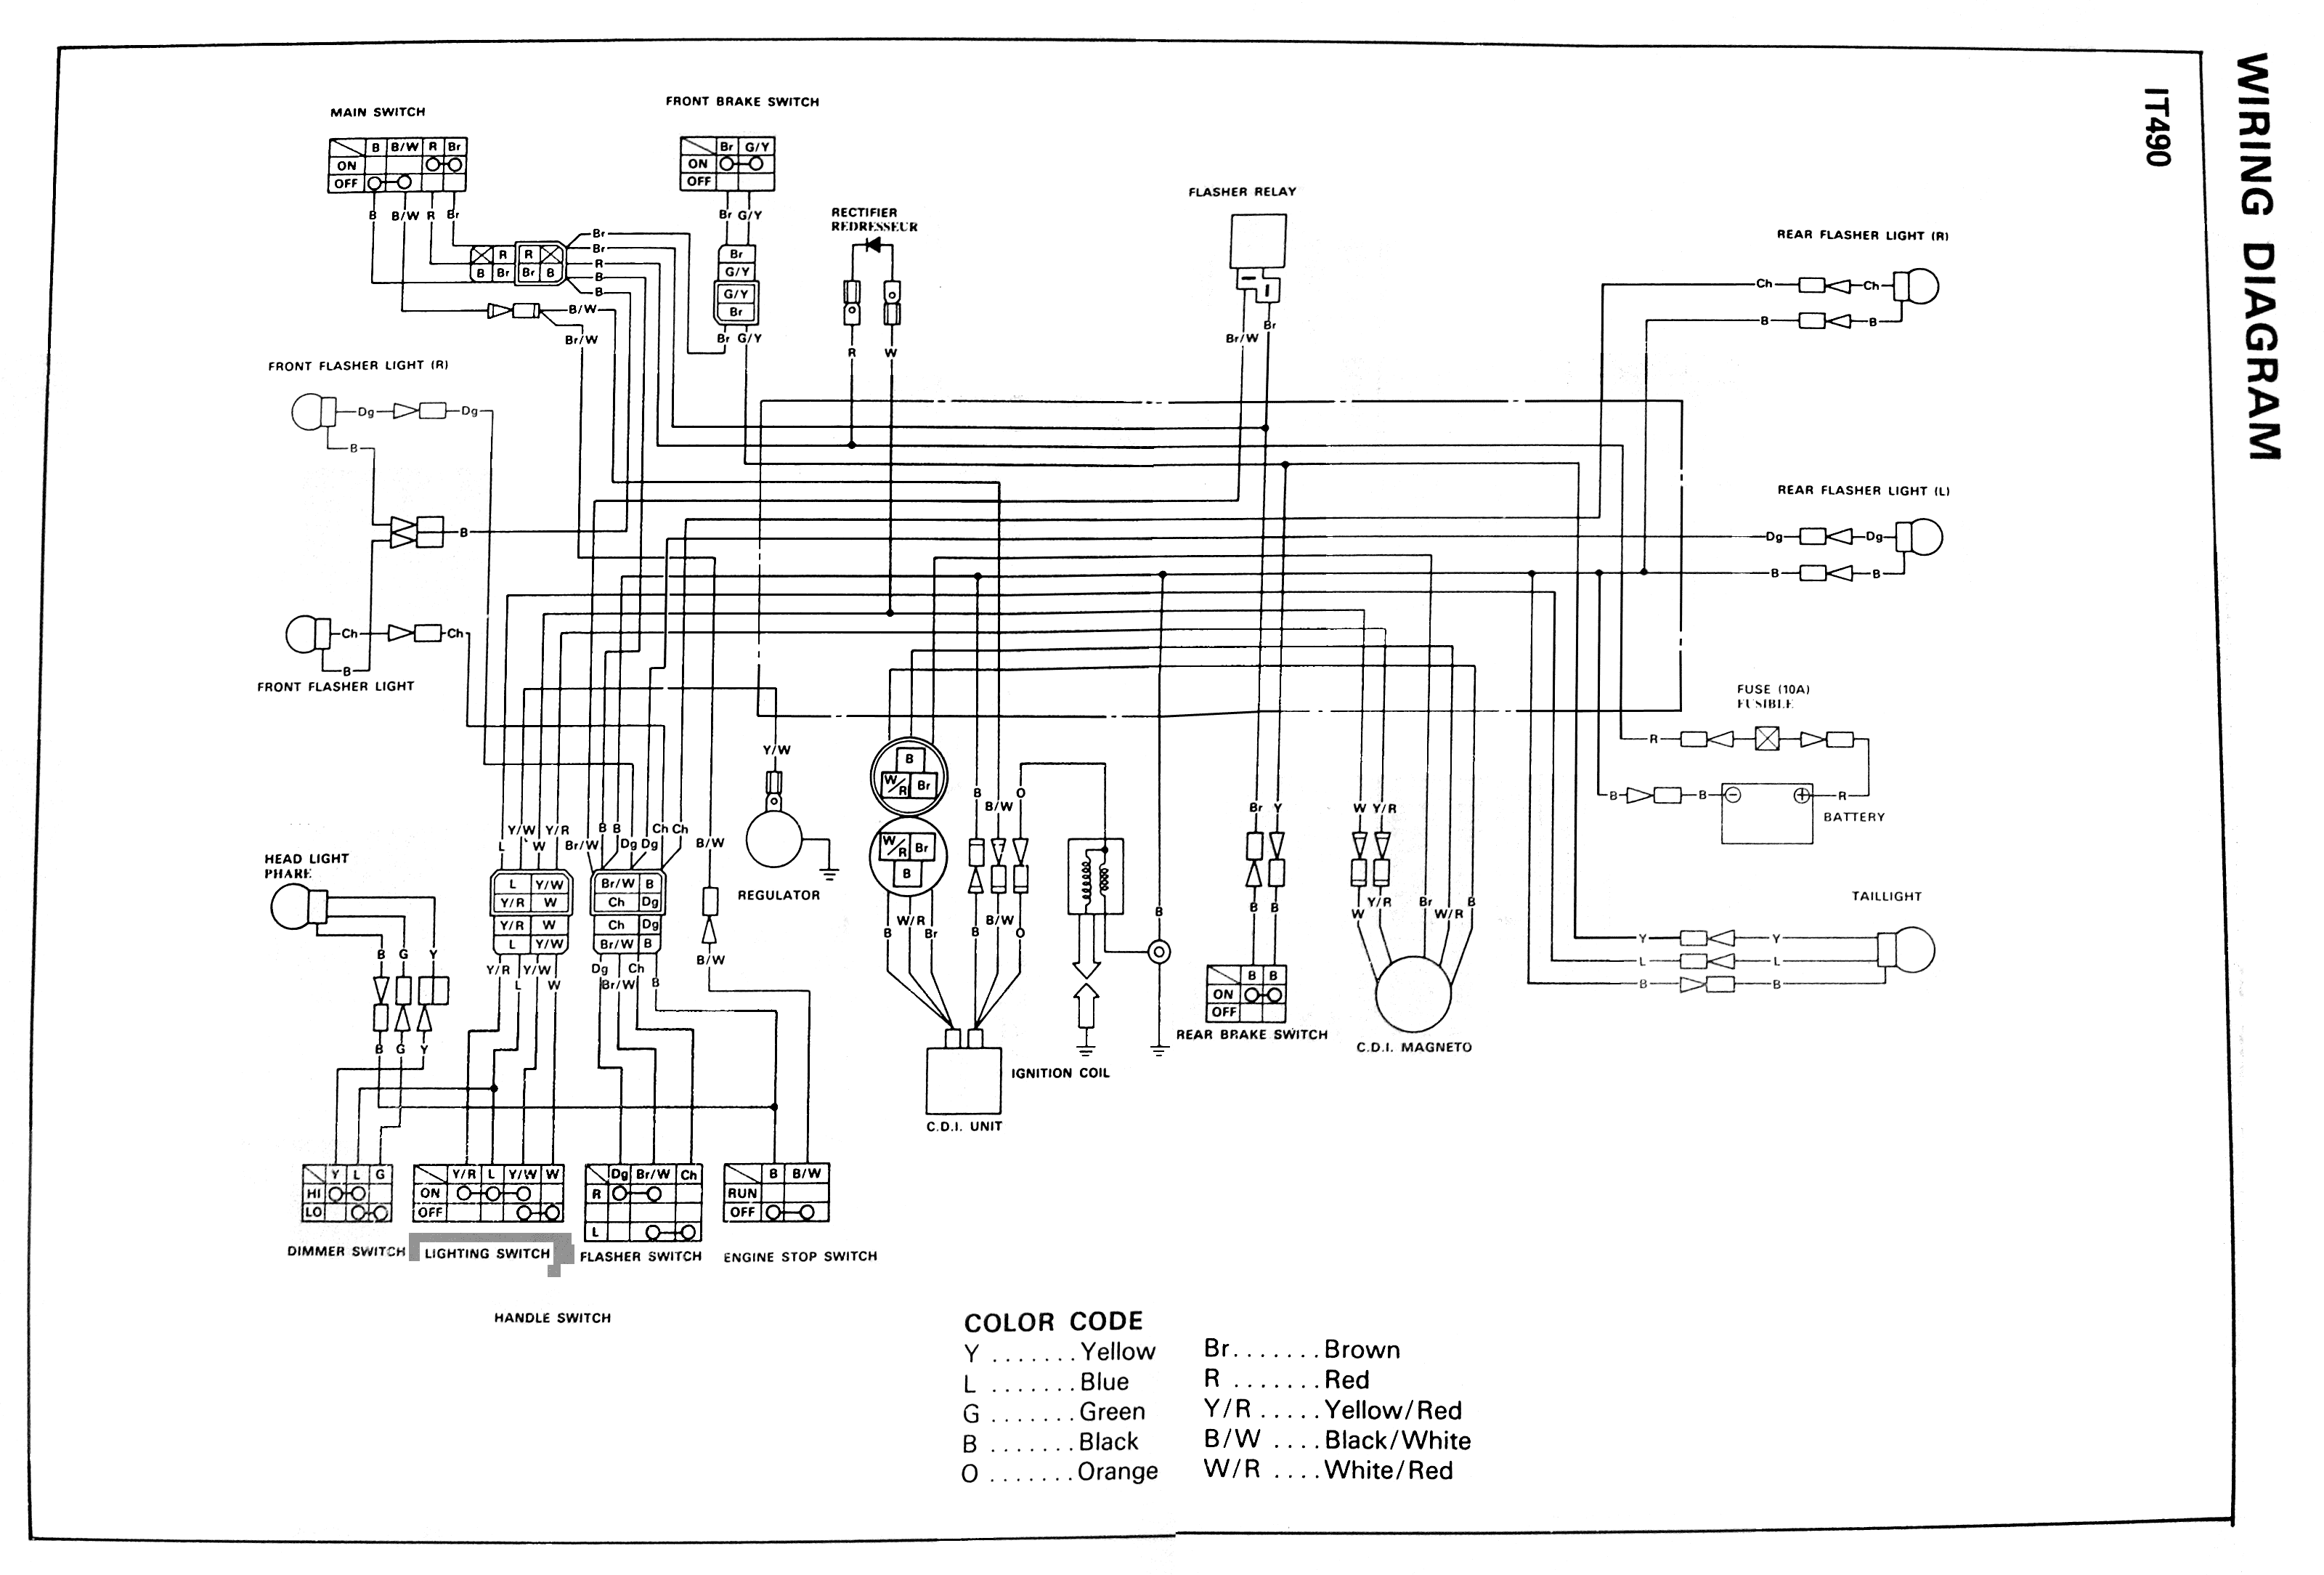 ... wiring diagram kawasaki 305 wiring diagram buyang atv wiring diagram